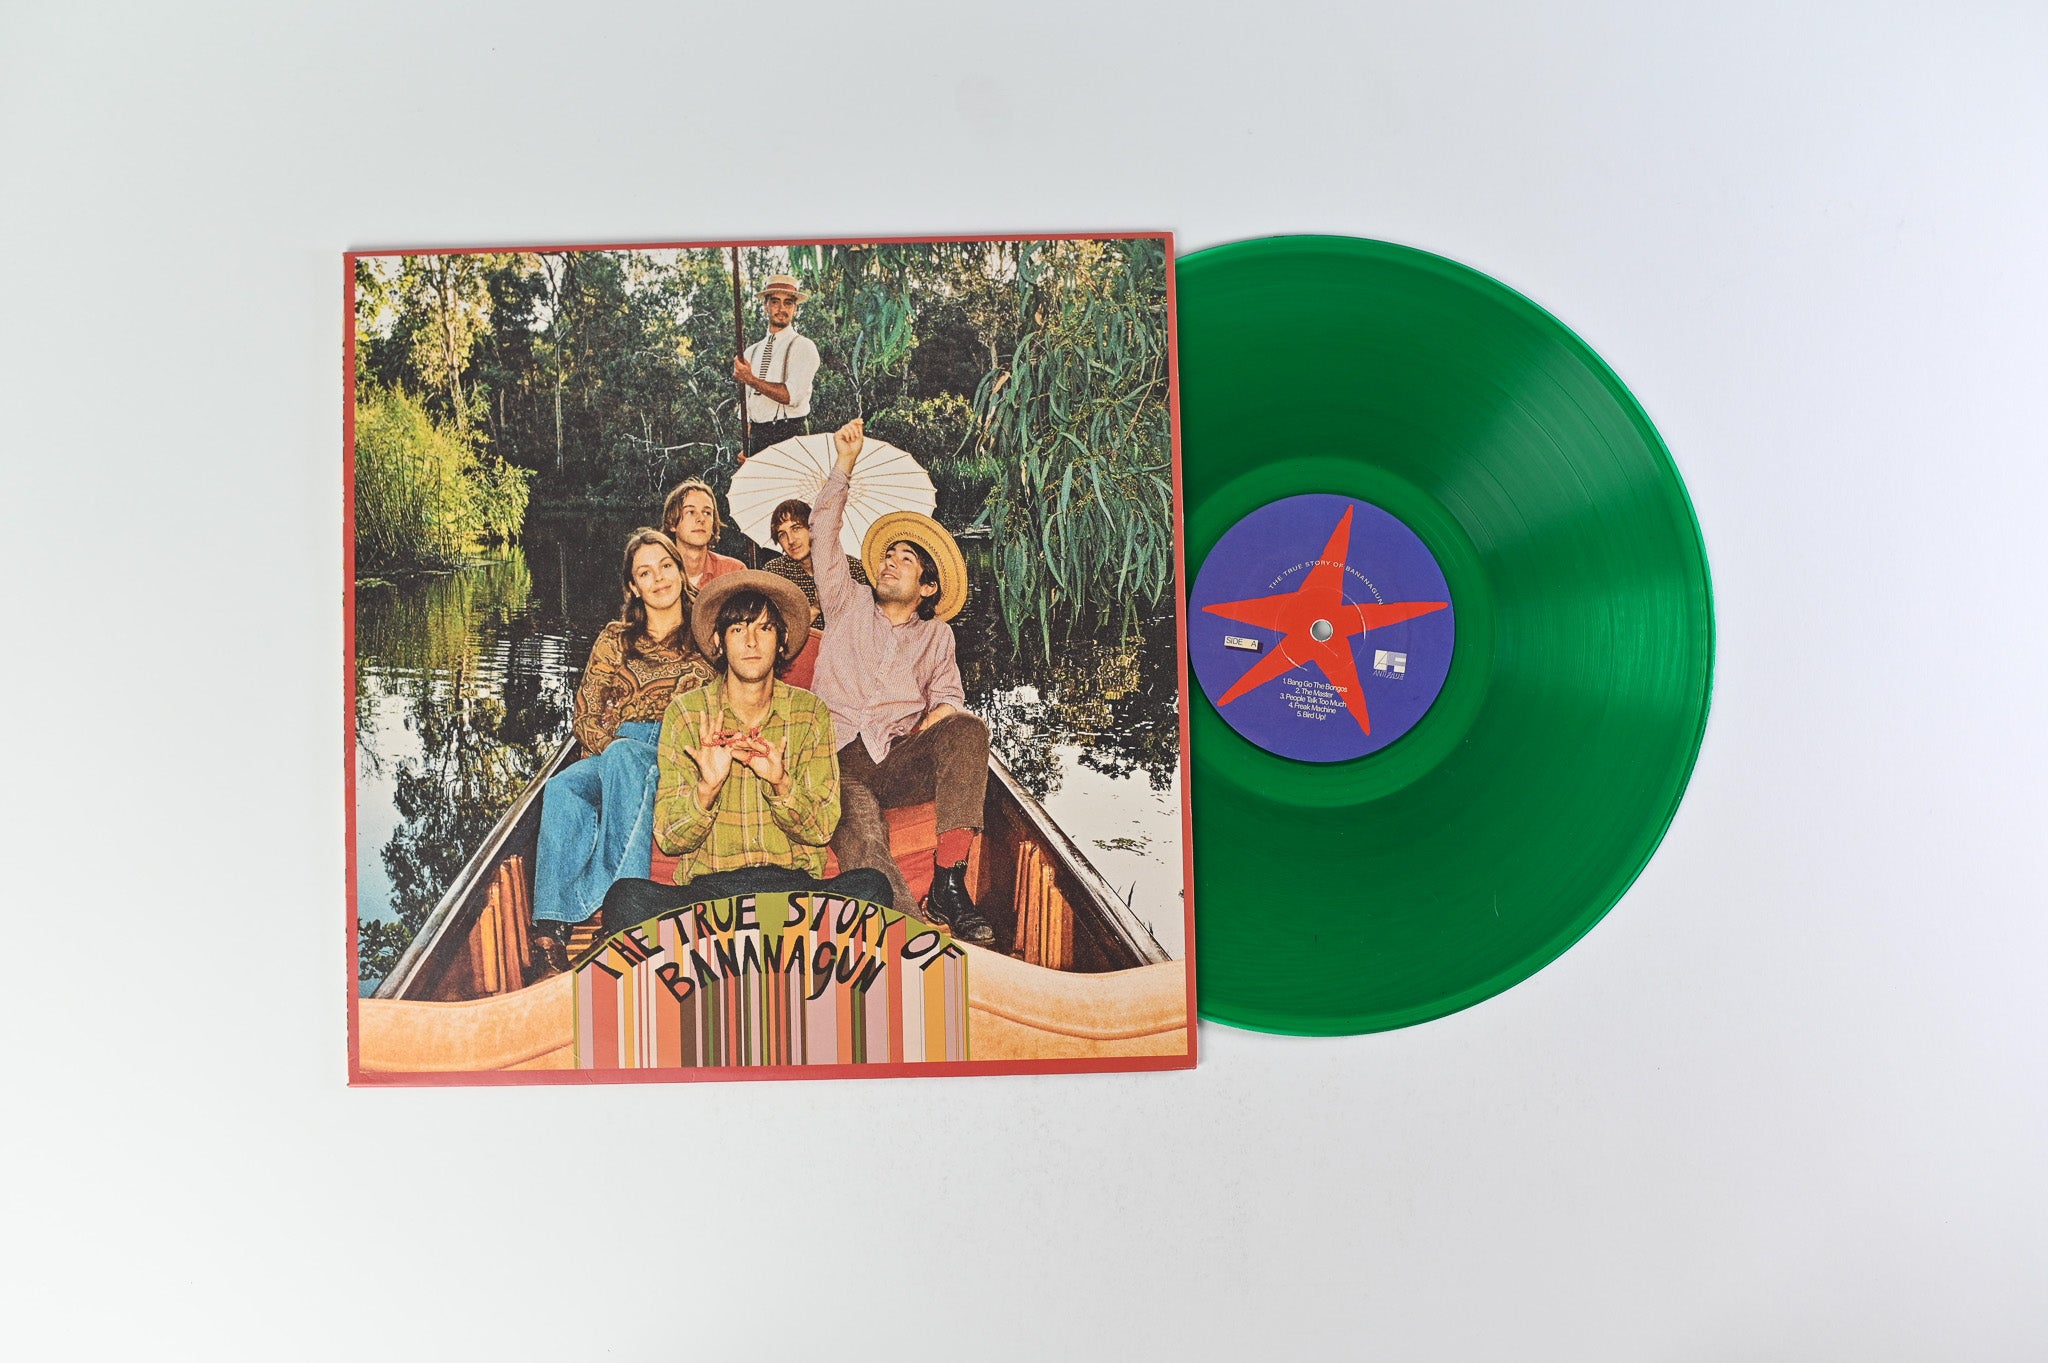 Bananagun - The True Story Of Bananagun on ANTI FADE Records Green Vinyl